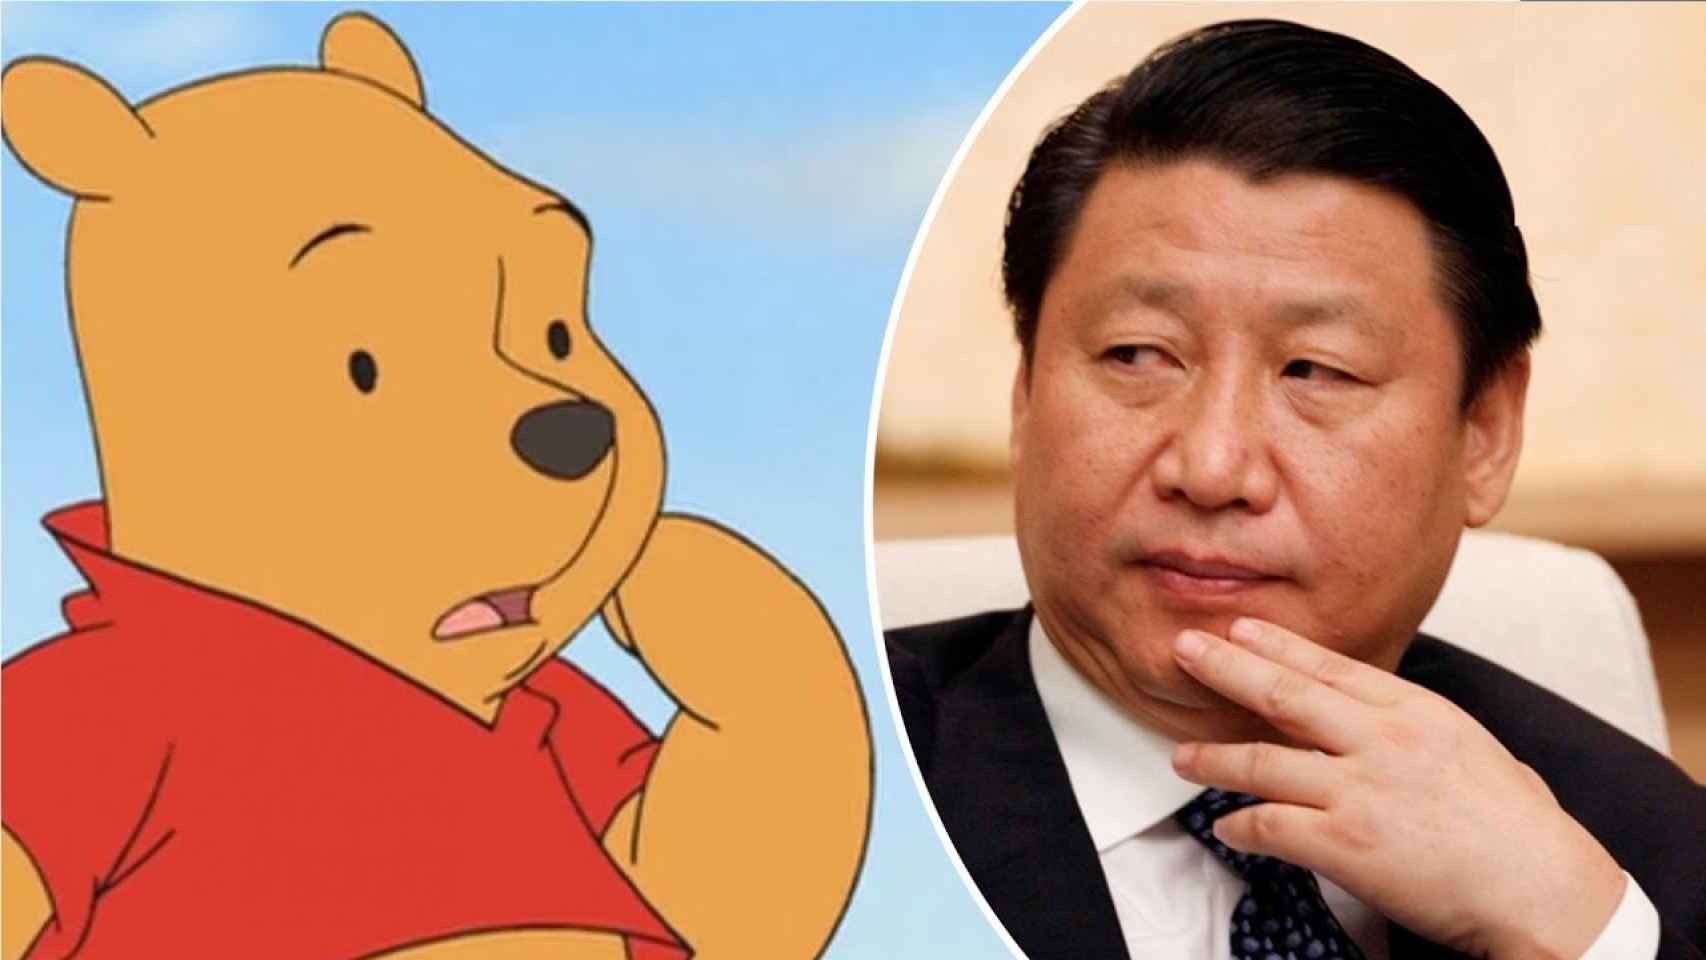 El famoso oso y el presidente Xi Jinping, juzguen ustedes mismos